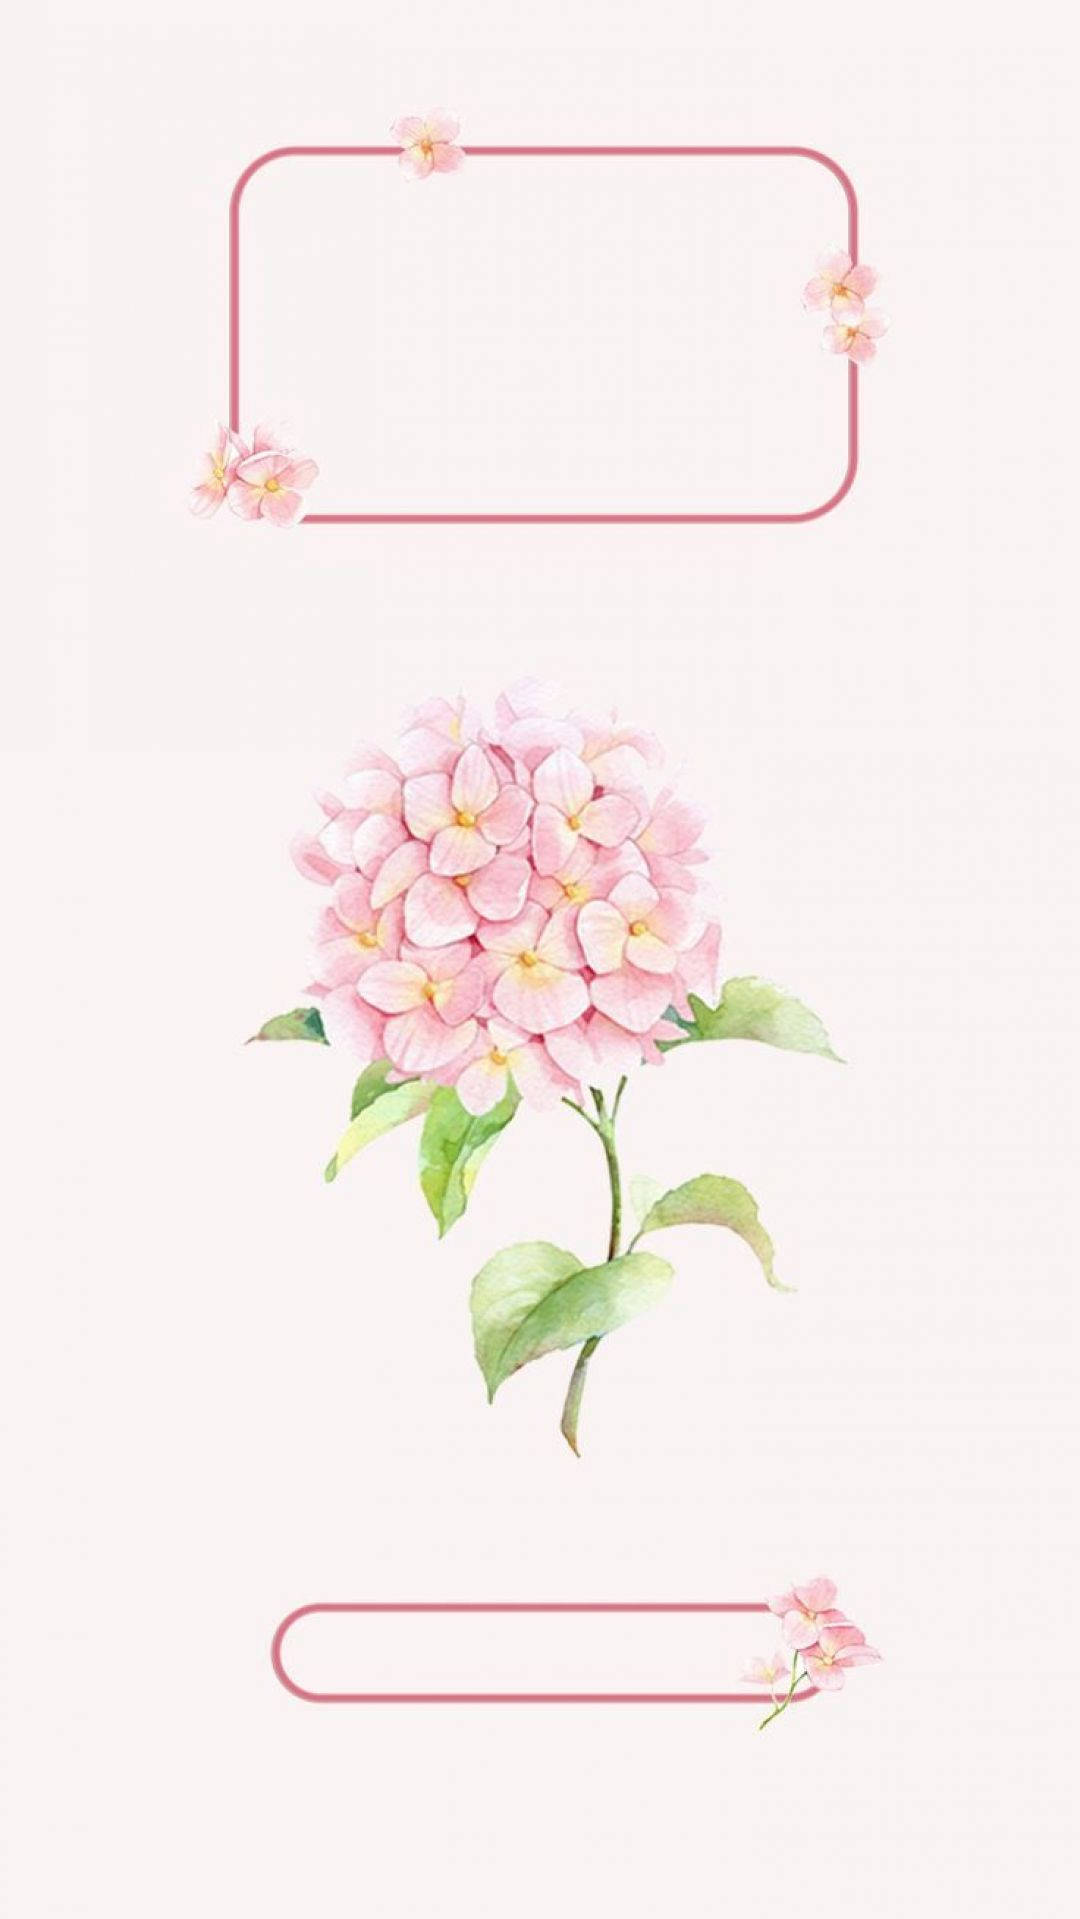 Vintage Aesthetic iPad Pink Flower Wallpaper